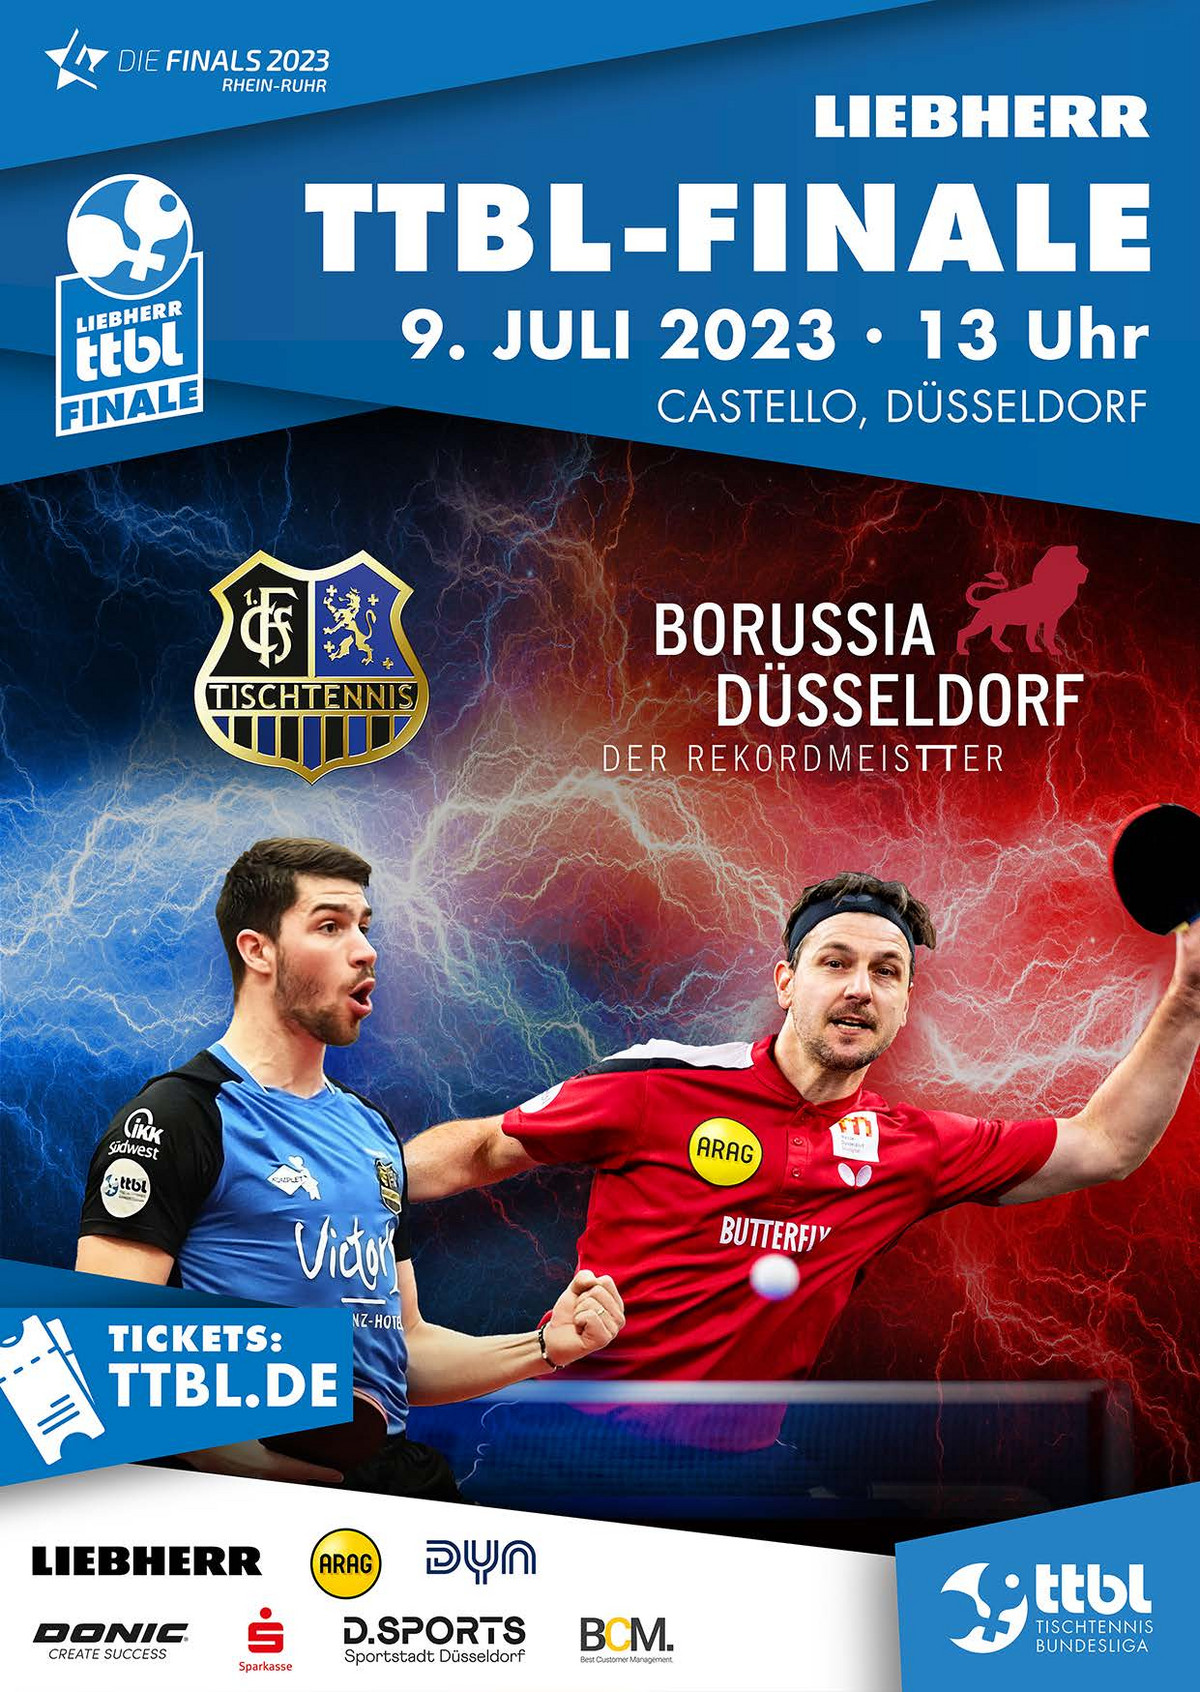 Liebherr TTBL-Finale Weltklasse-Tischtennis beim Showdown im Castello Düsseldorf